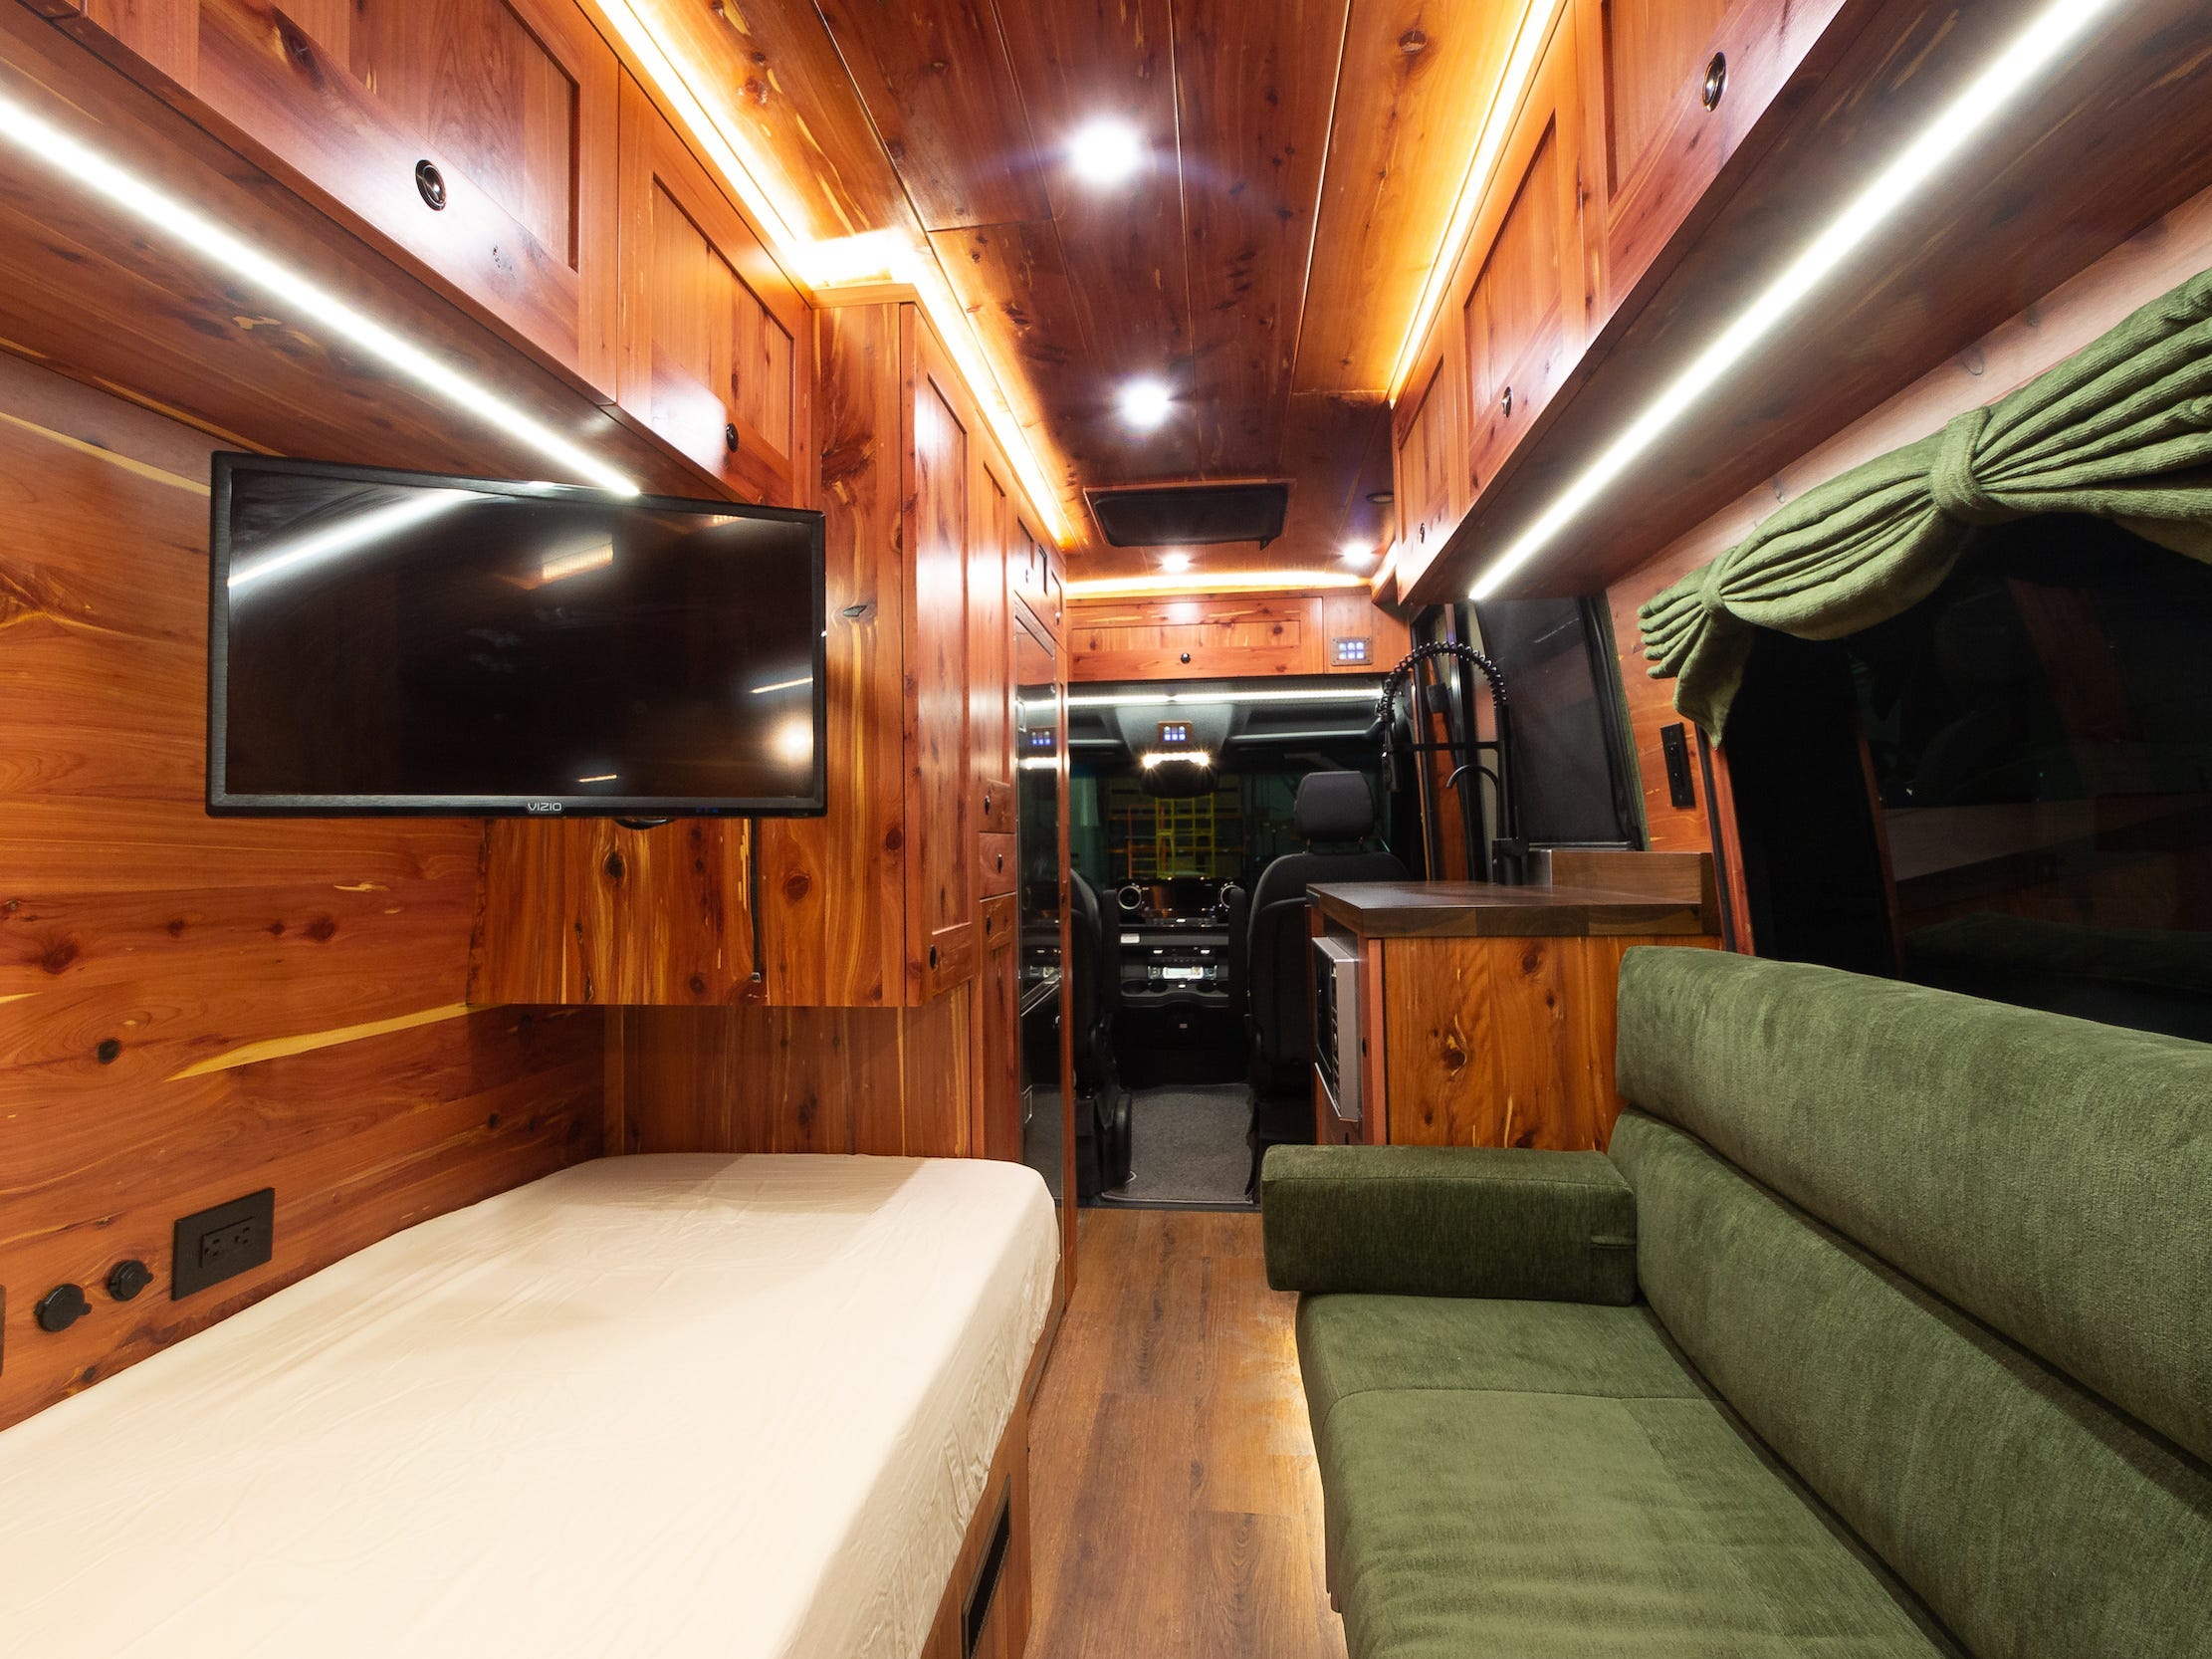 Links ein Bett, rechts eine grüne Couch.  Es gibt einen Fernseher, der von der Decke hängt, und einen Blick durch die Vorderseite des Vans.